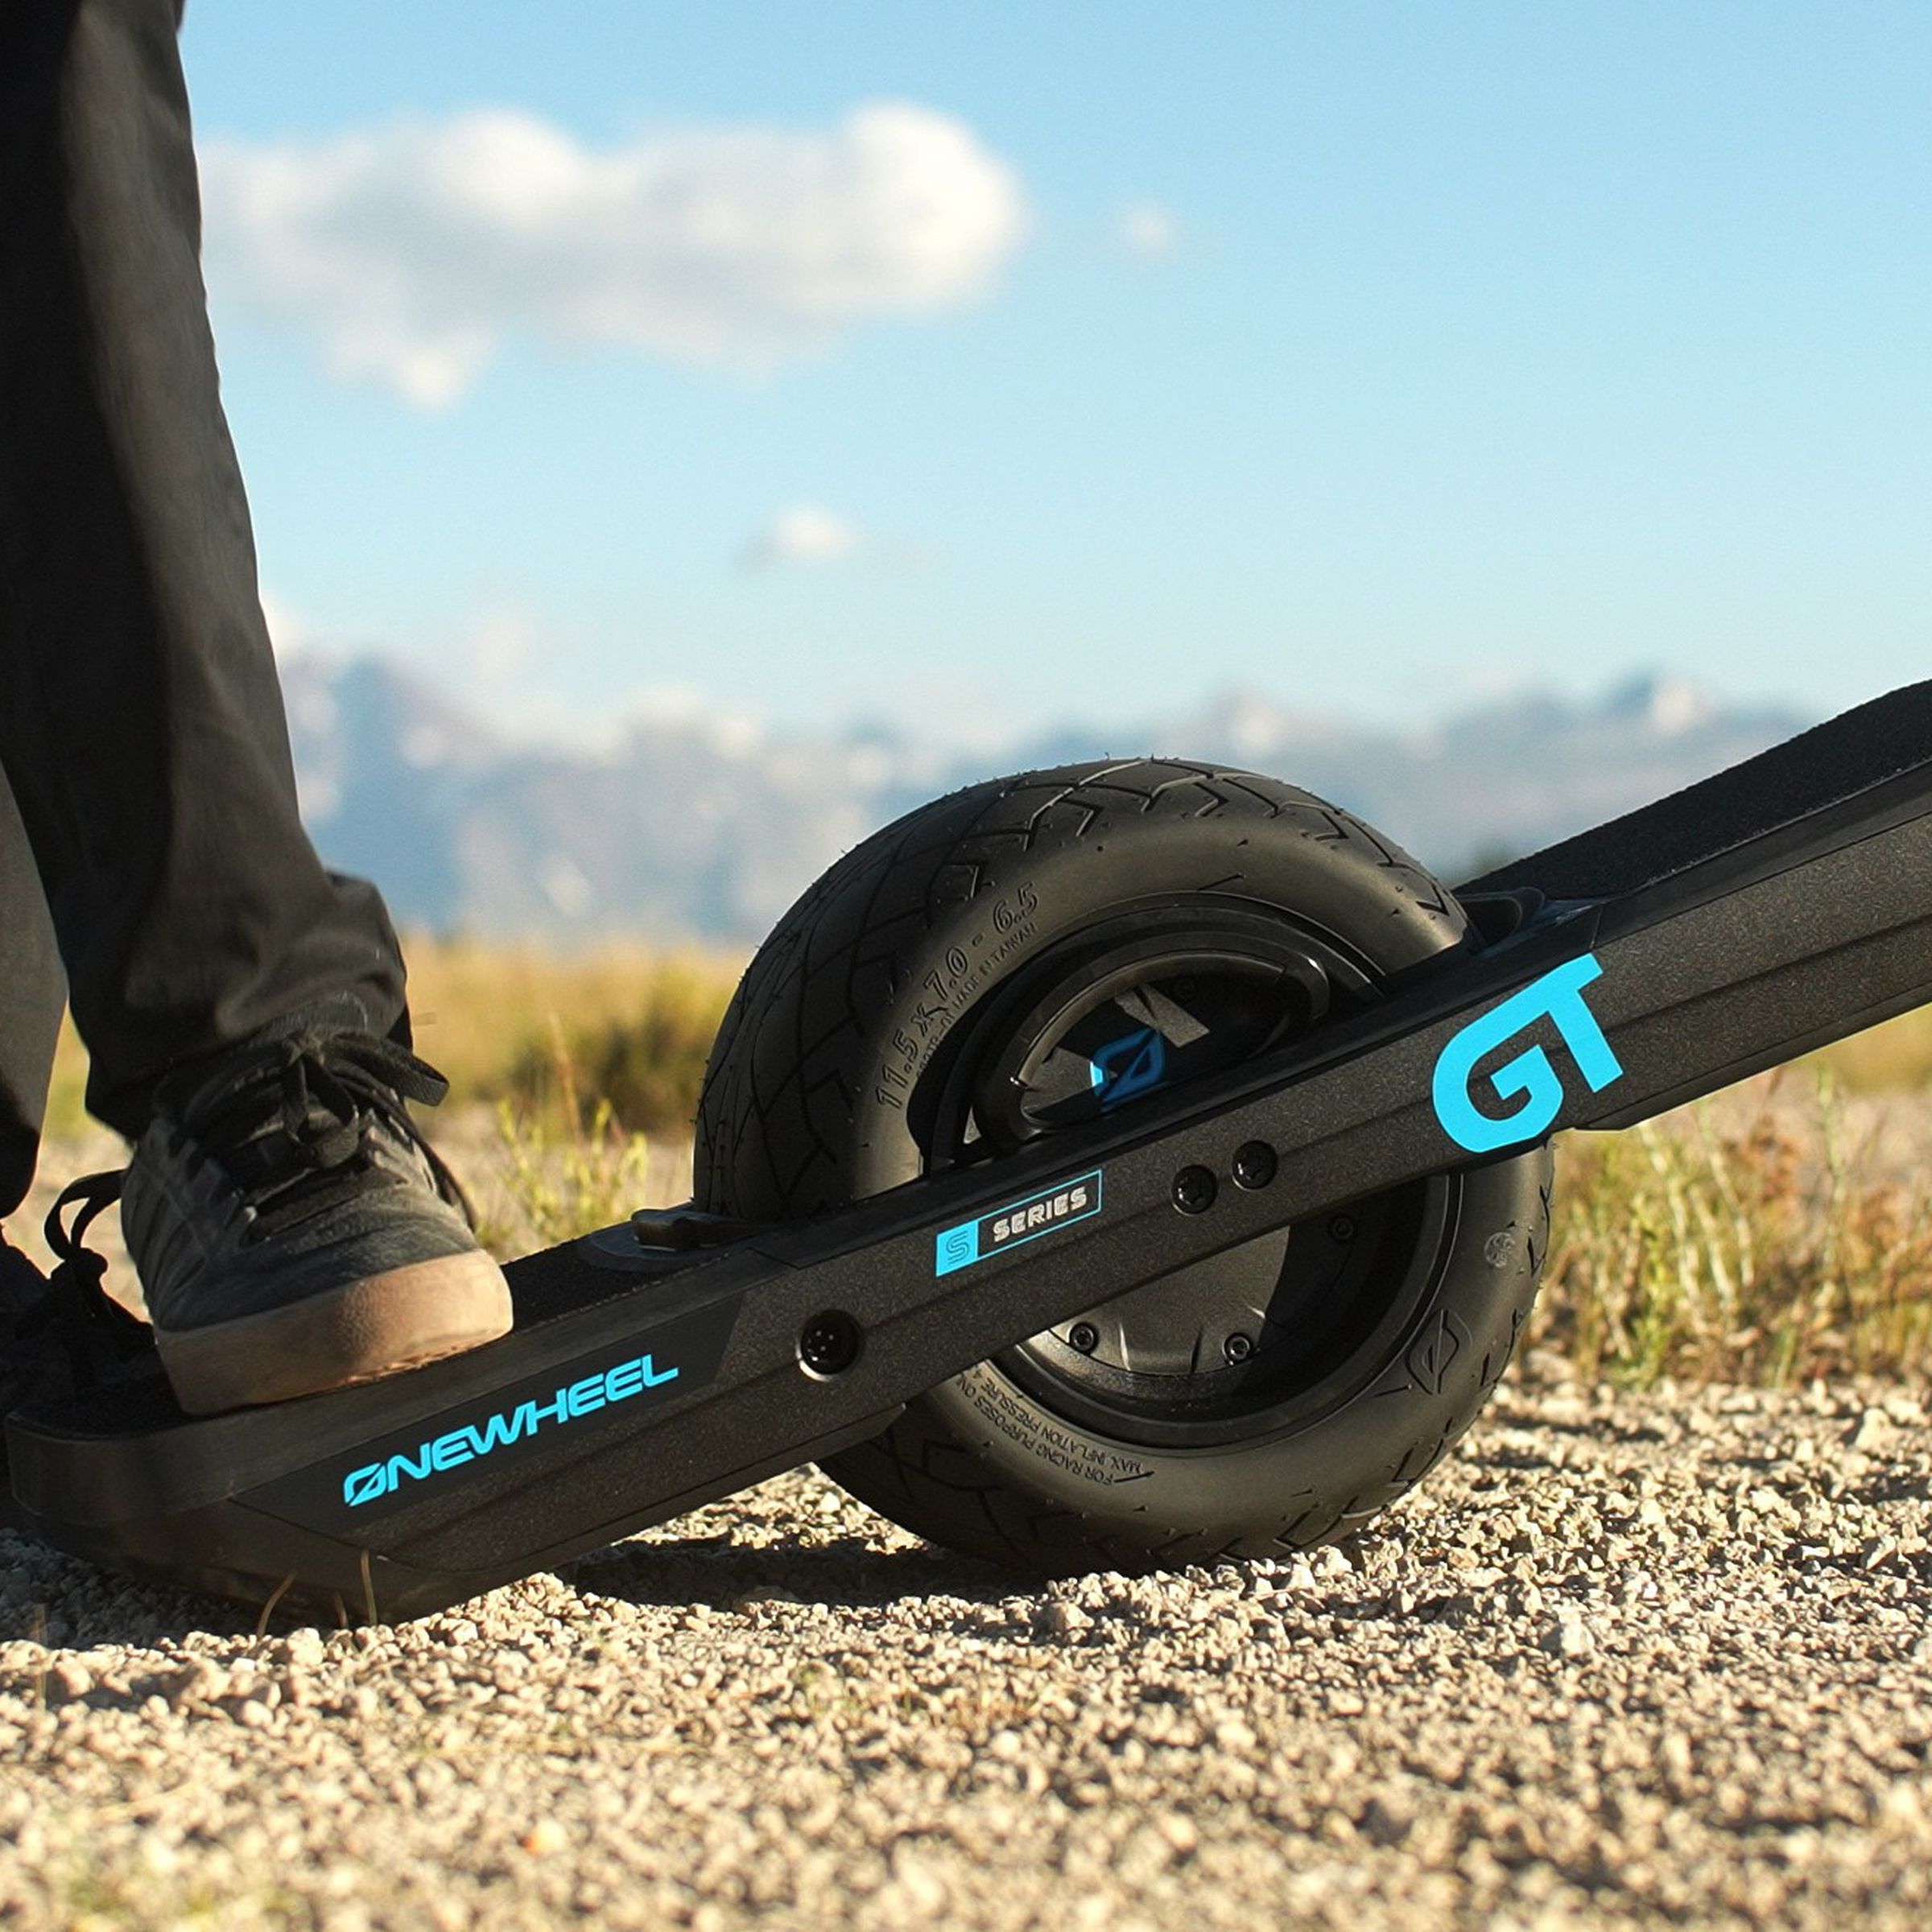 It’s an electric skateboard with a single wheel inside.